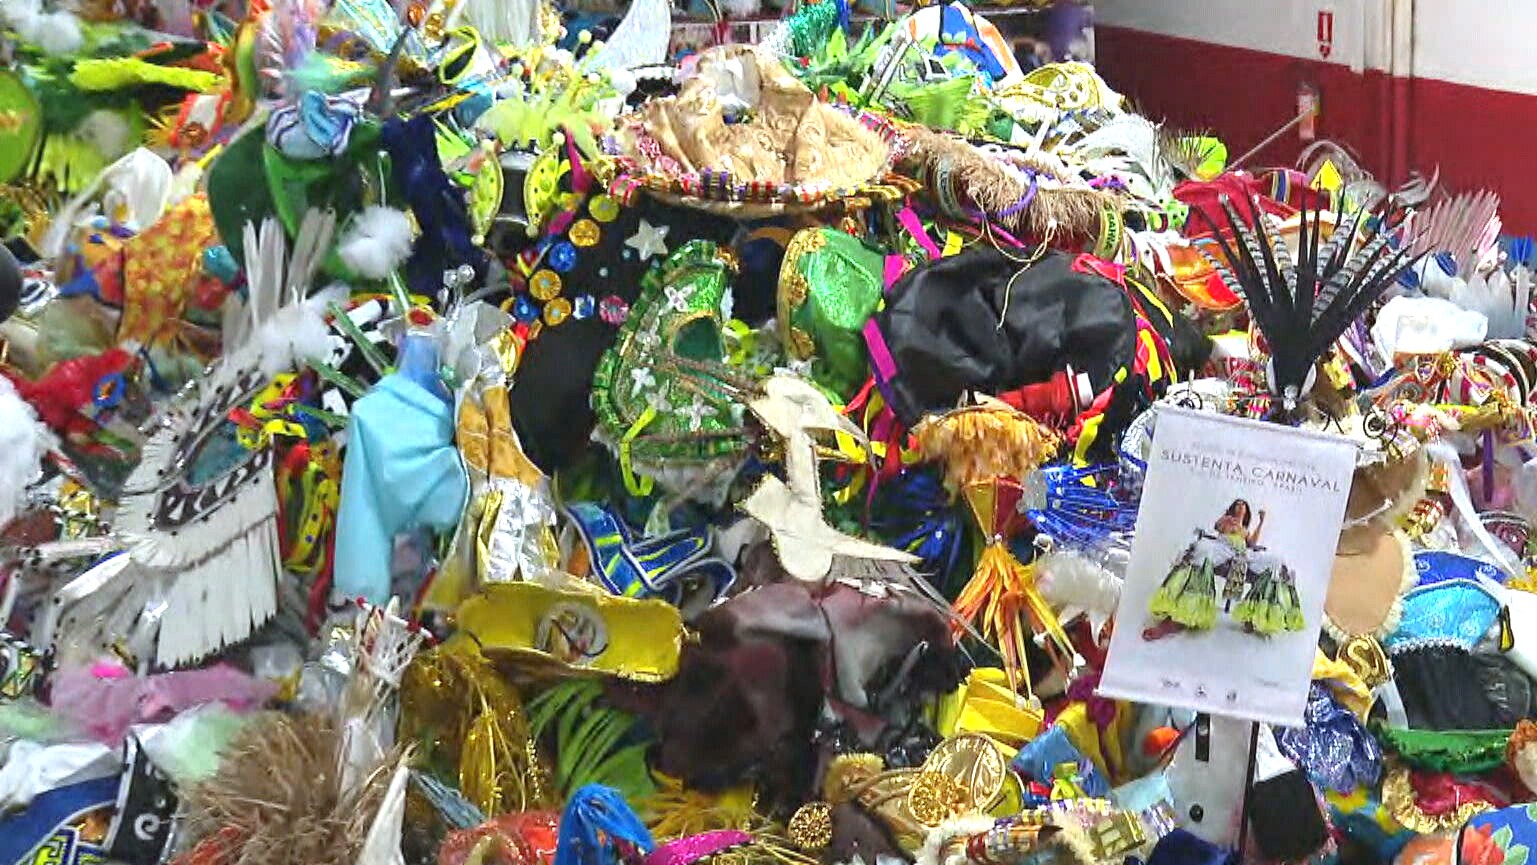 Sustenta Carnaval: programa recolhe em 5 dias 23 toneladas de fantasias descartadas na Sapucaí e revende peças para o mundo todo